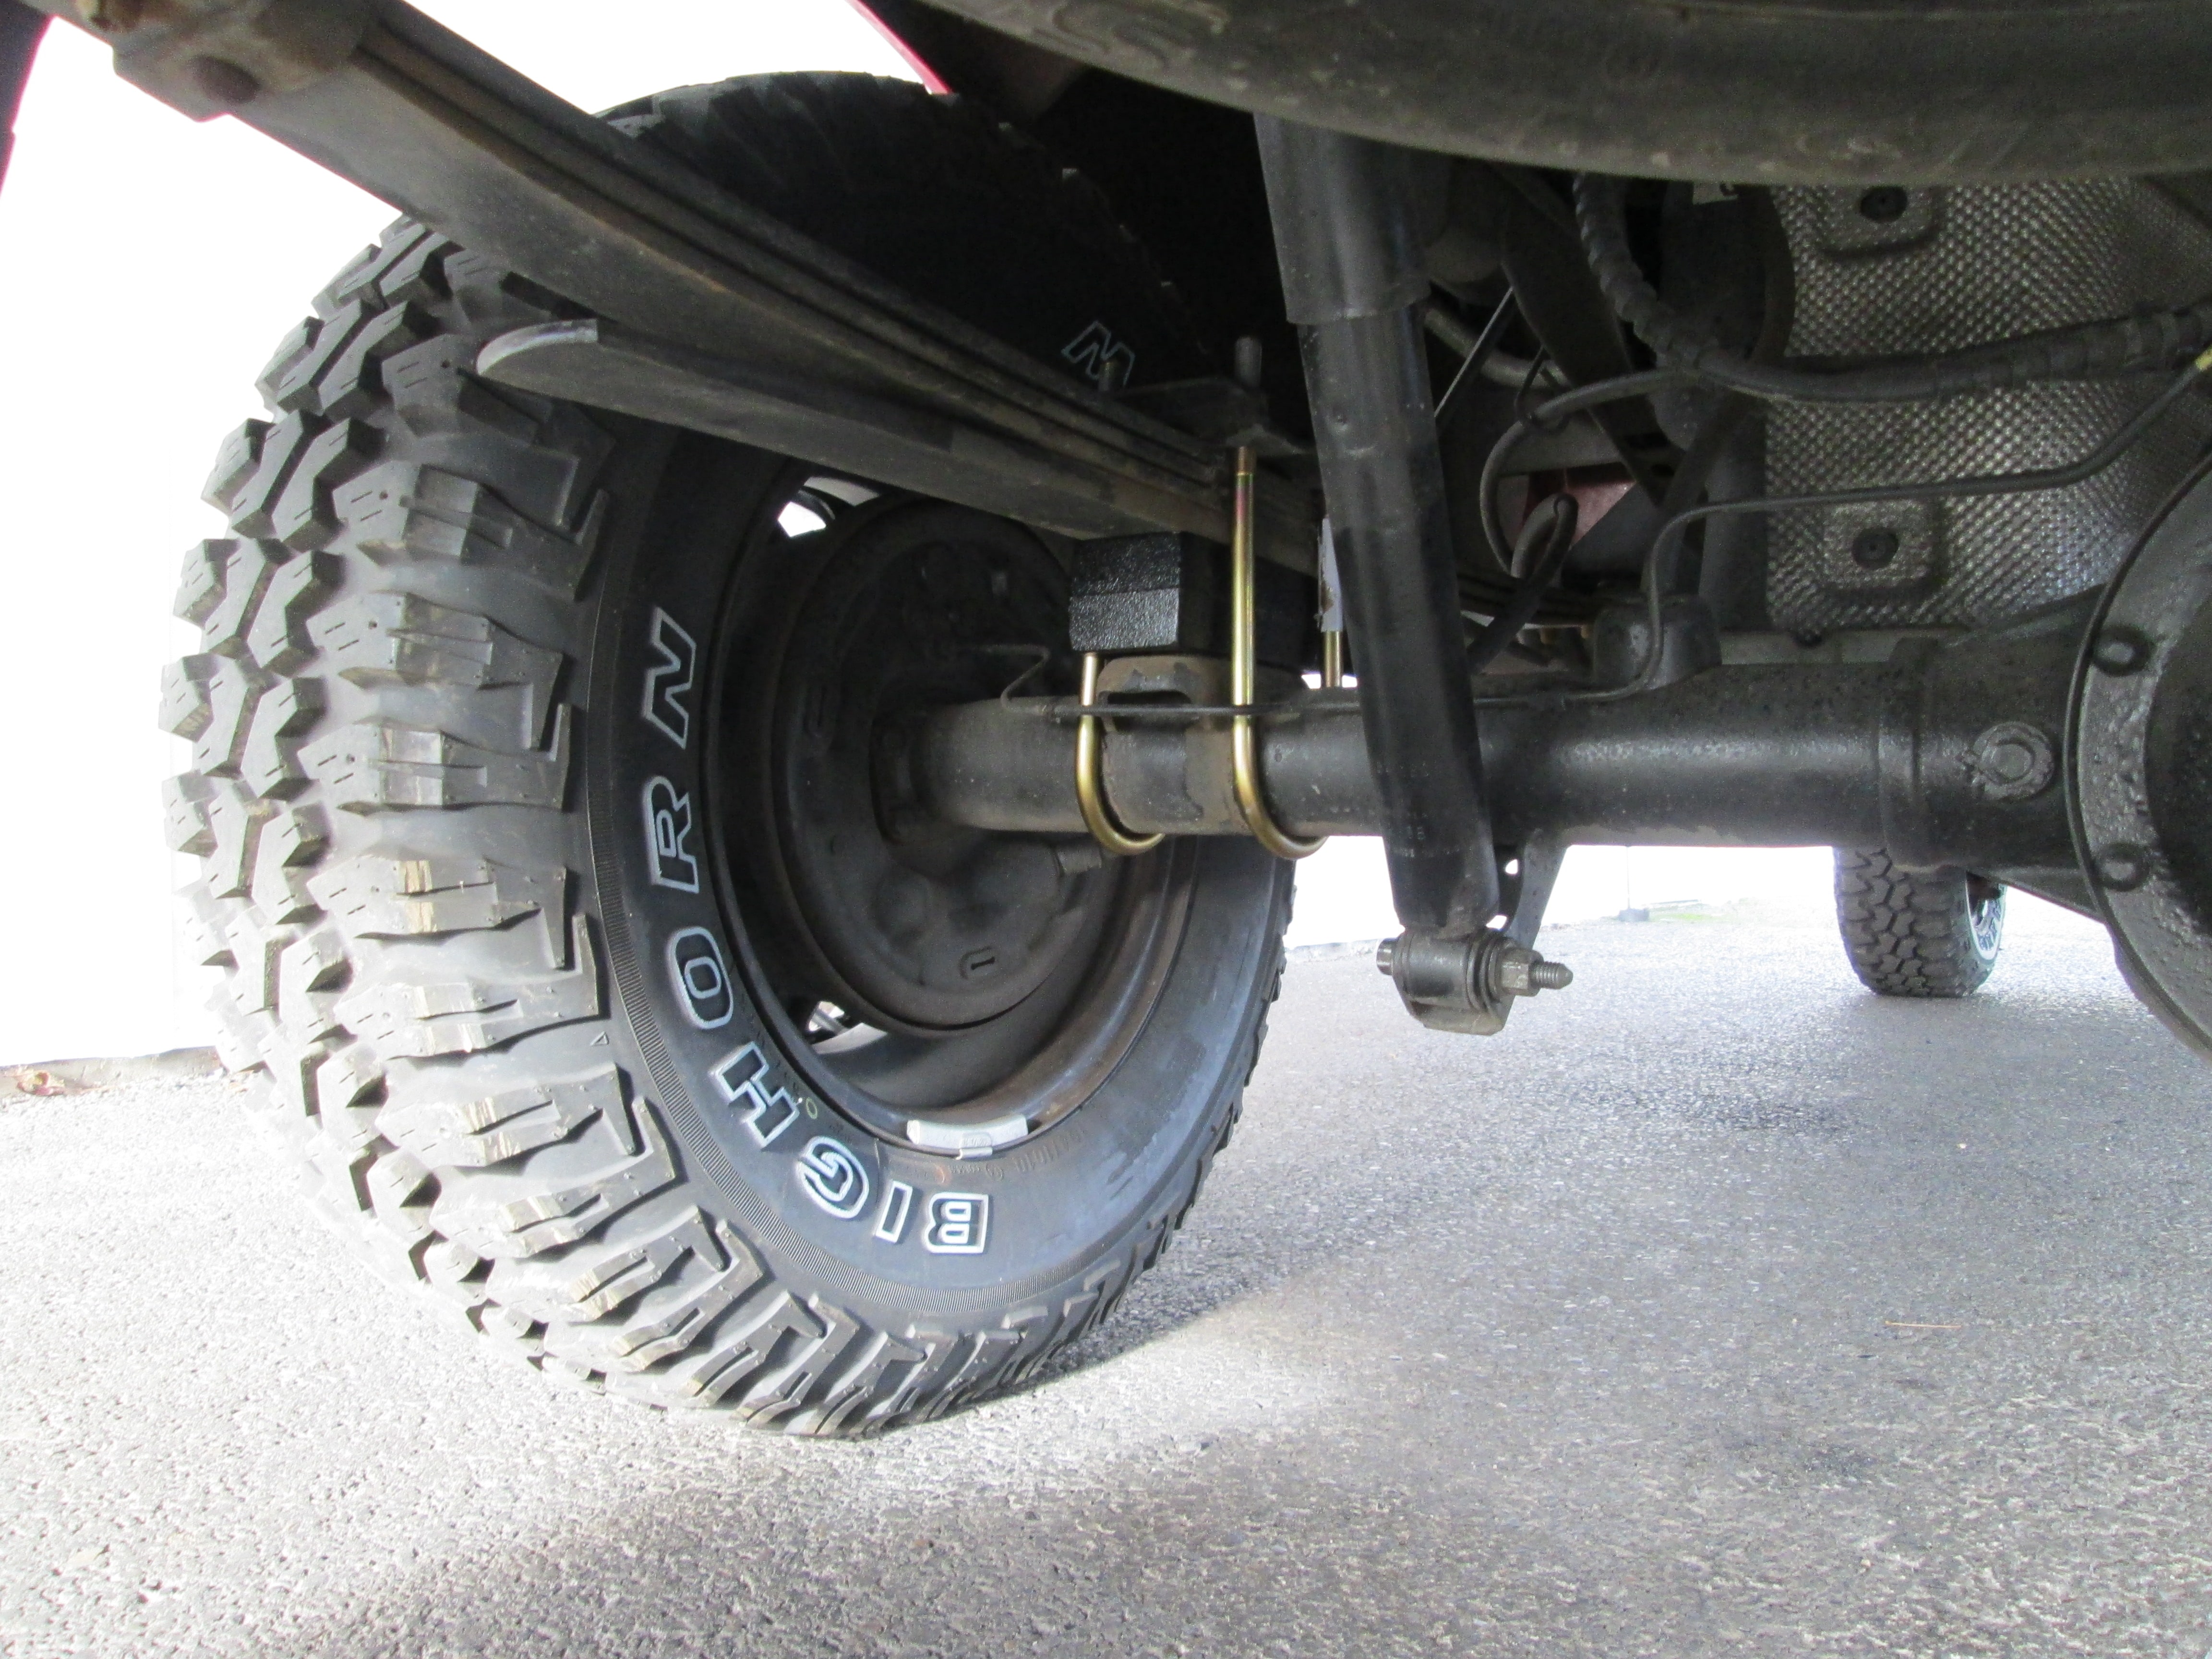 Ford Ranger lift kit and new tires